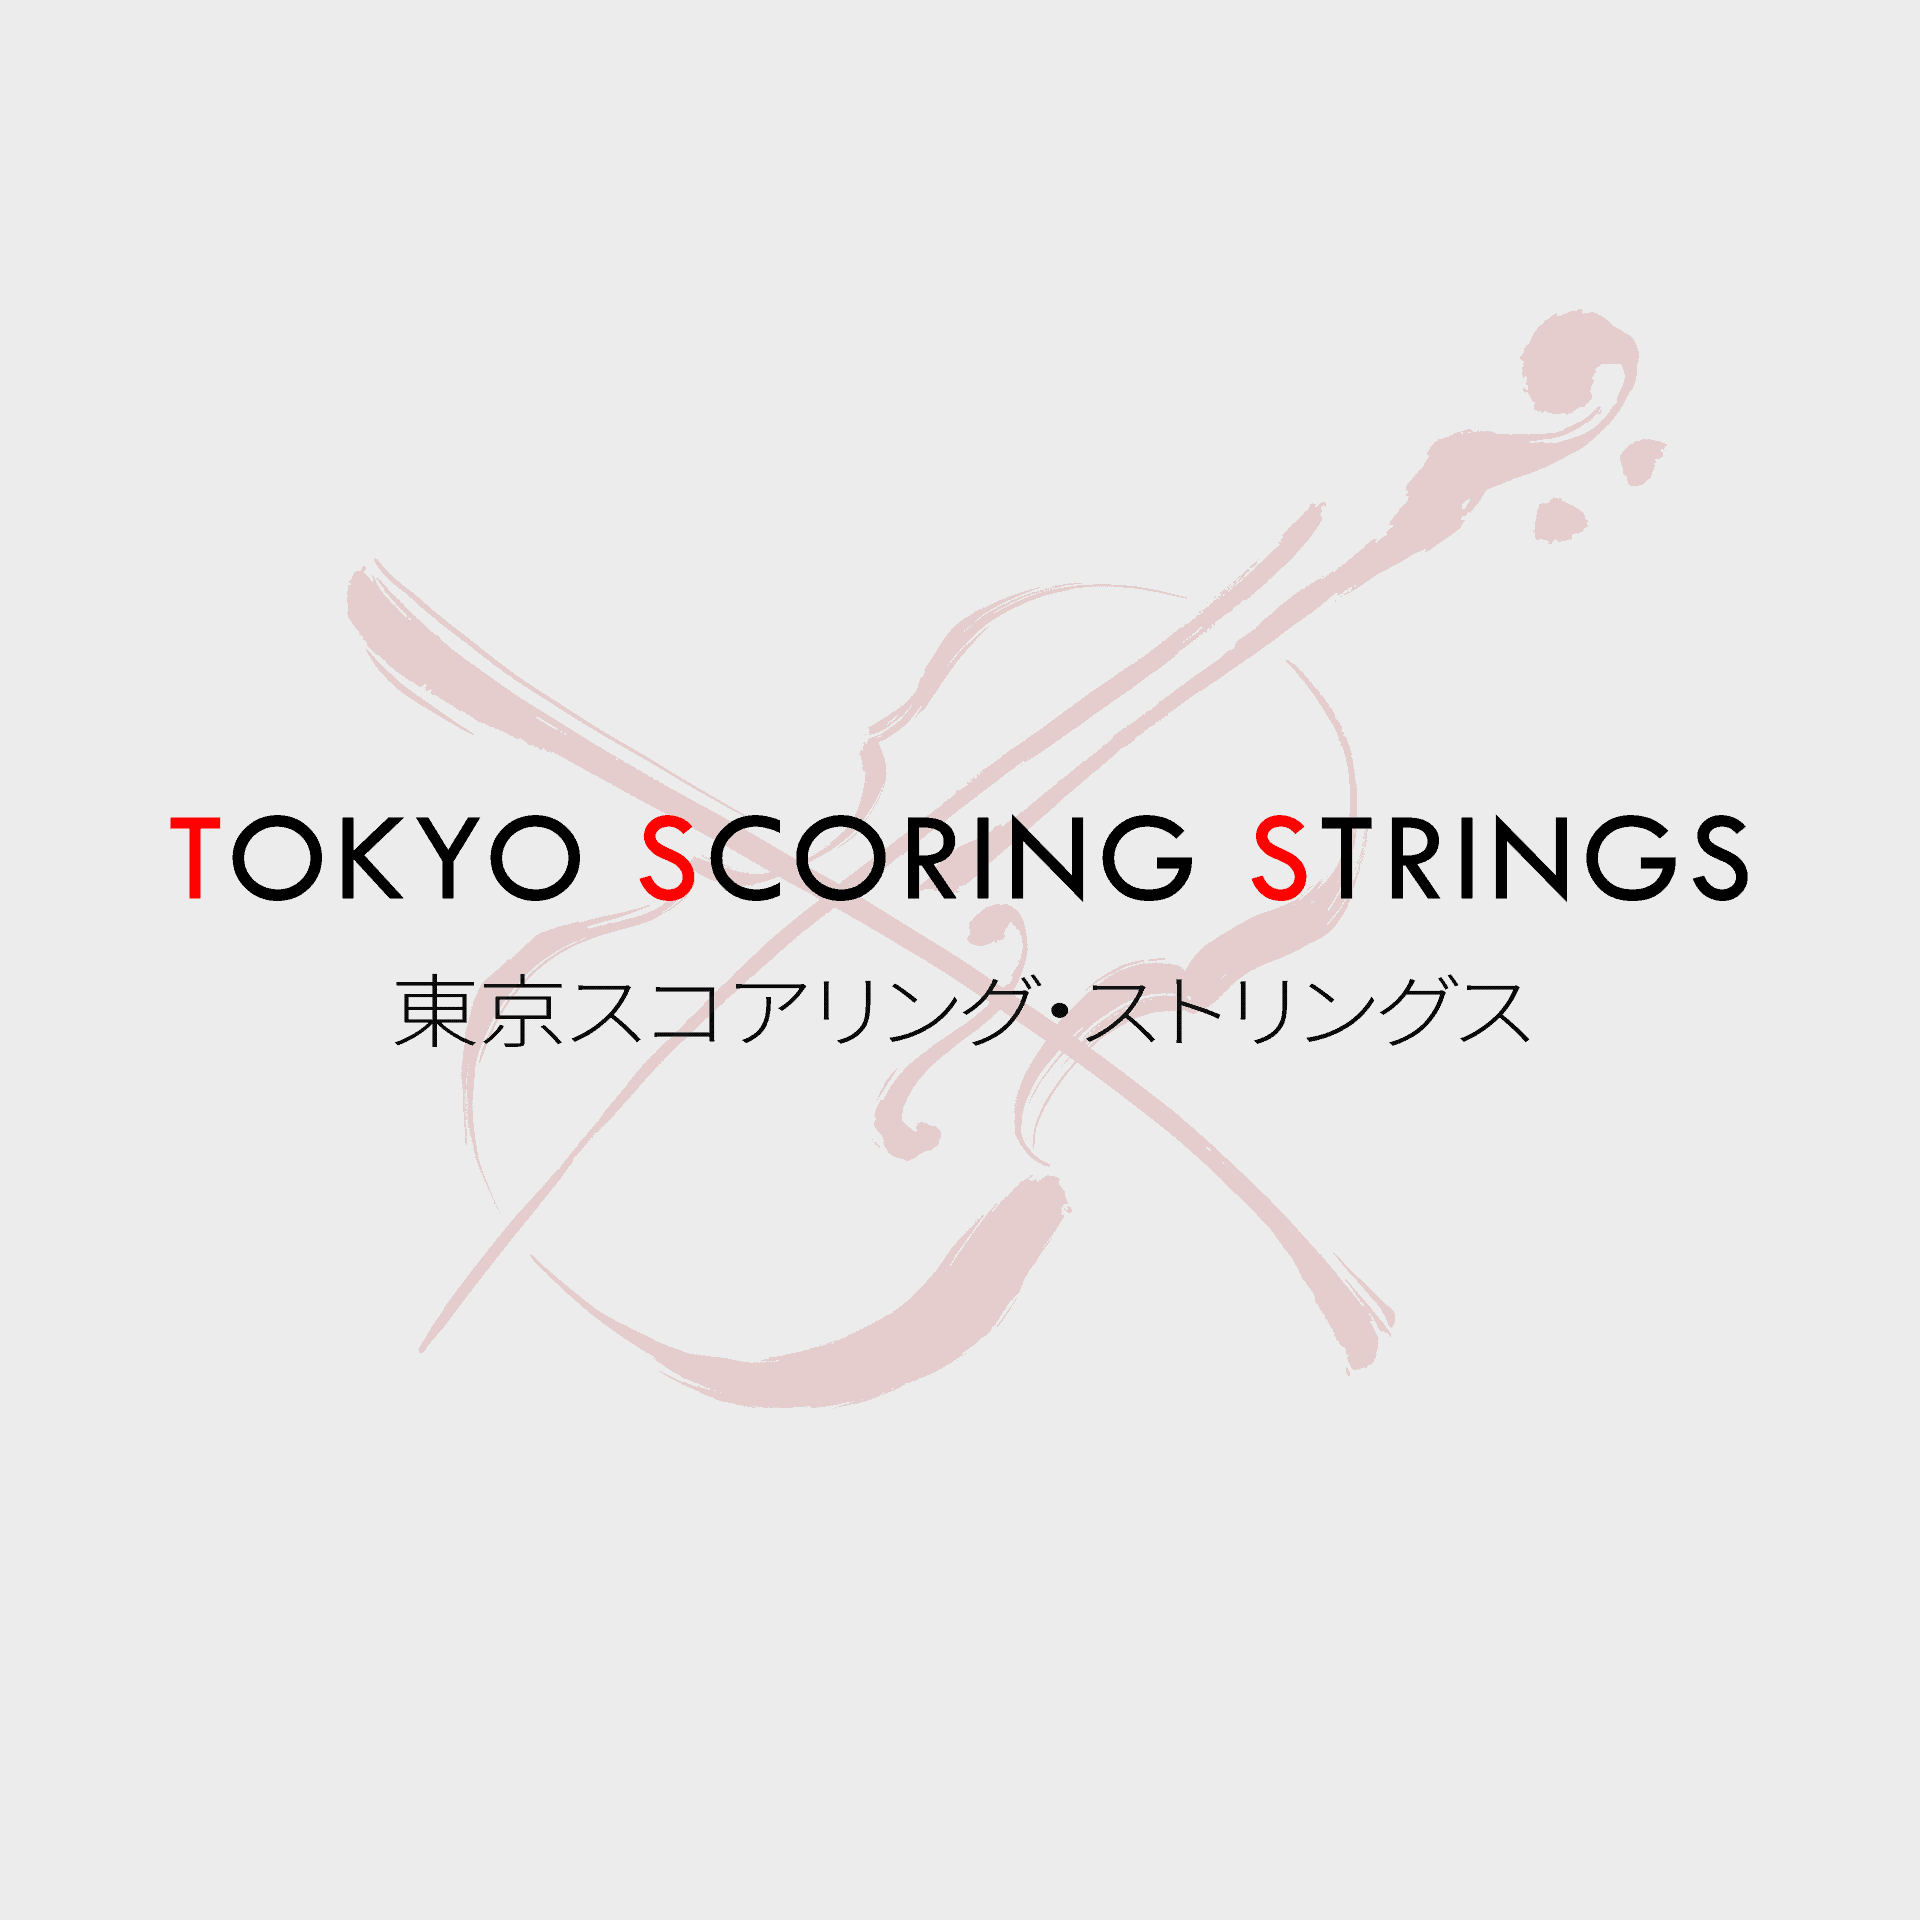 Tokyo Scoring Strings Square Logo